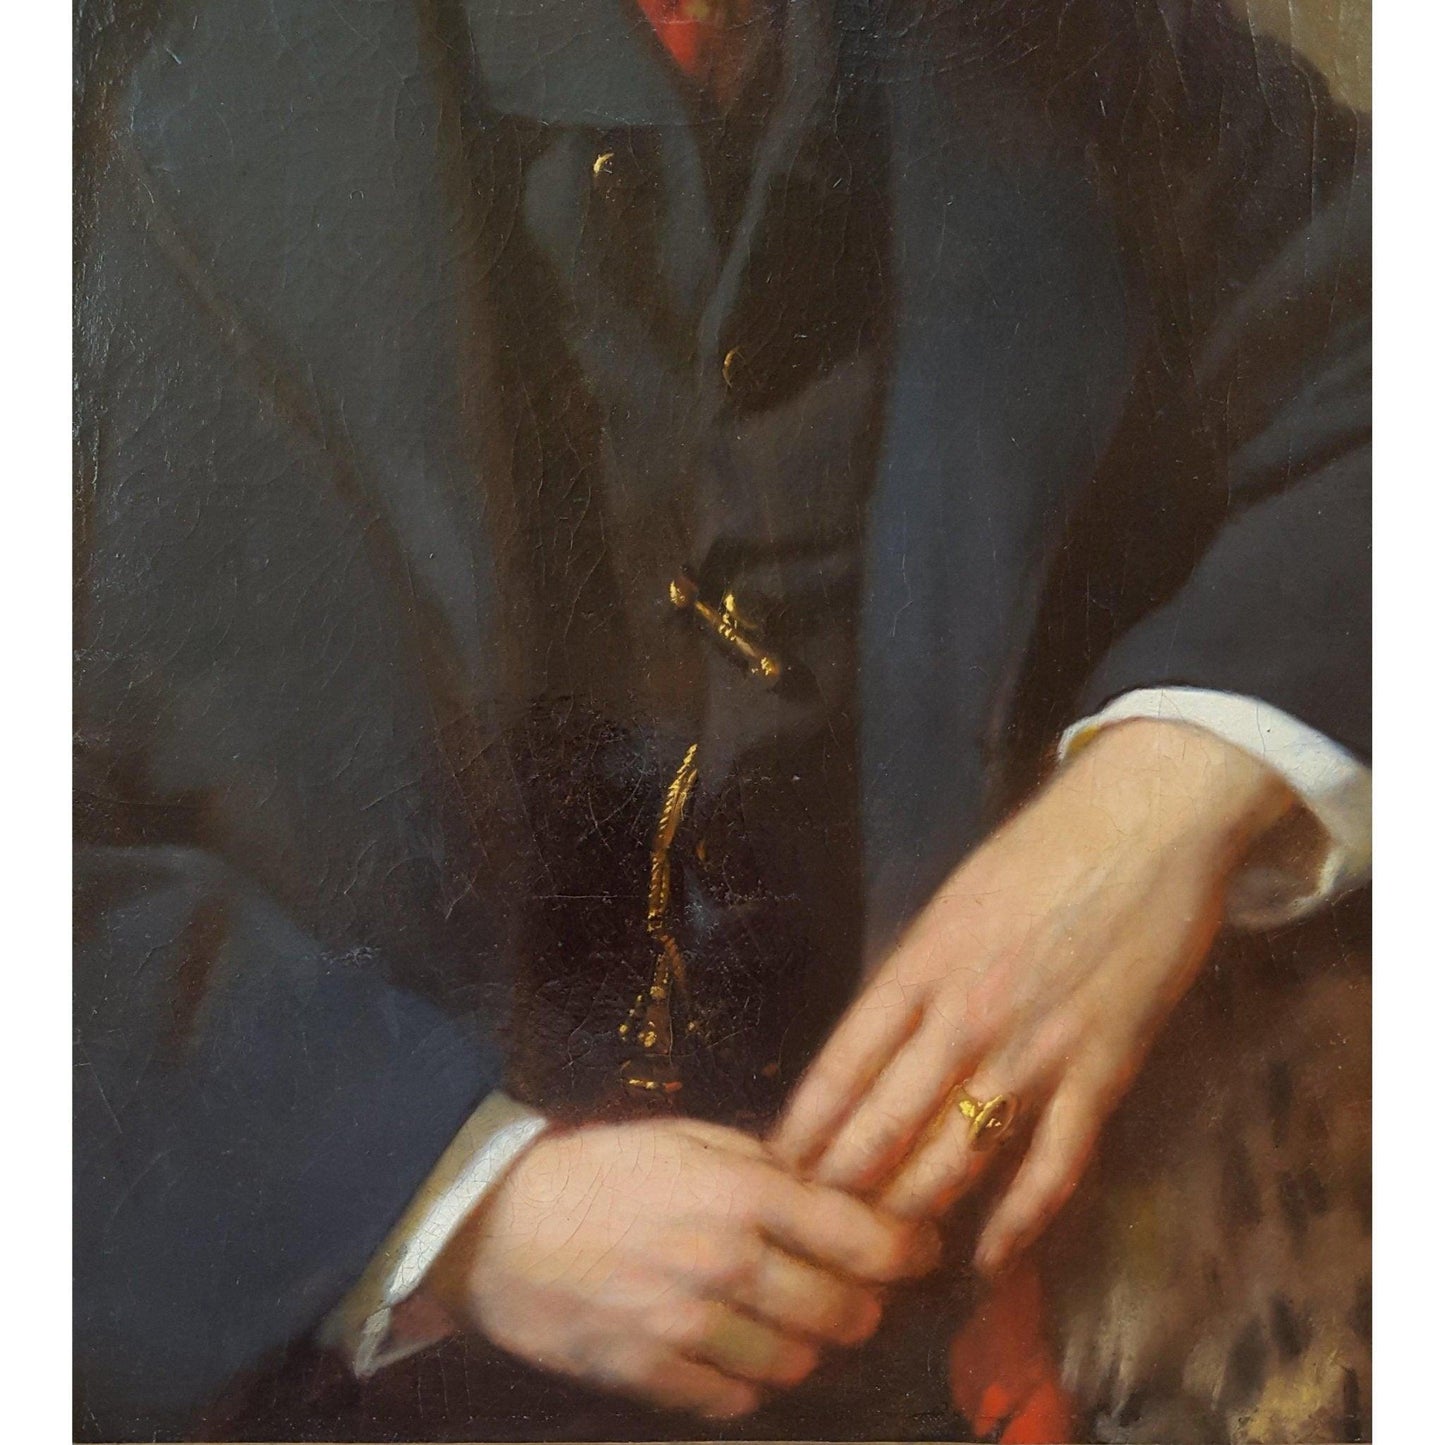 Antique portrait oil painting gentleman leopard skin 1863 by Franz Sterrer for sale at Winckelmann Gallery